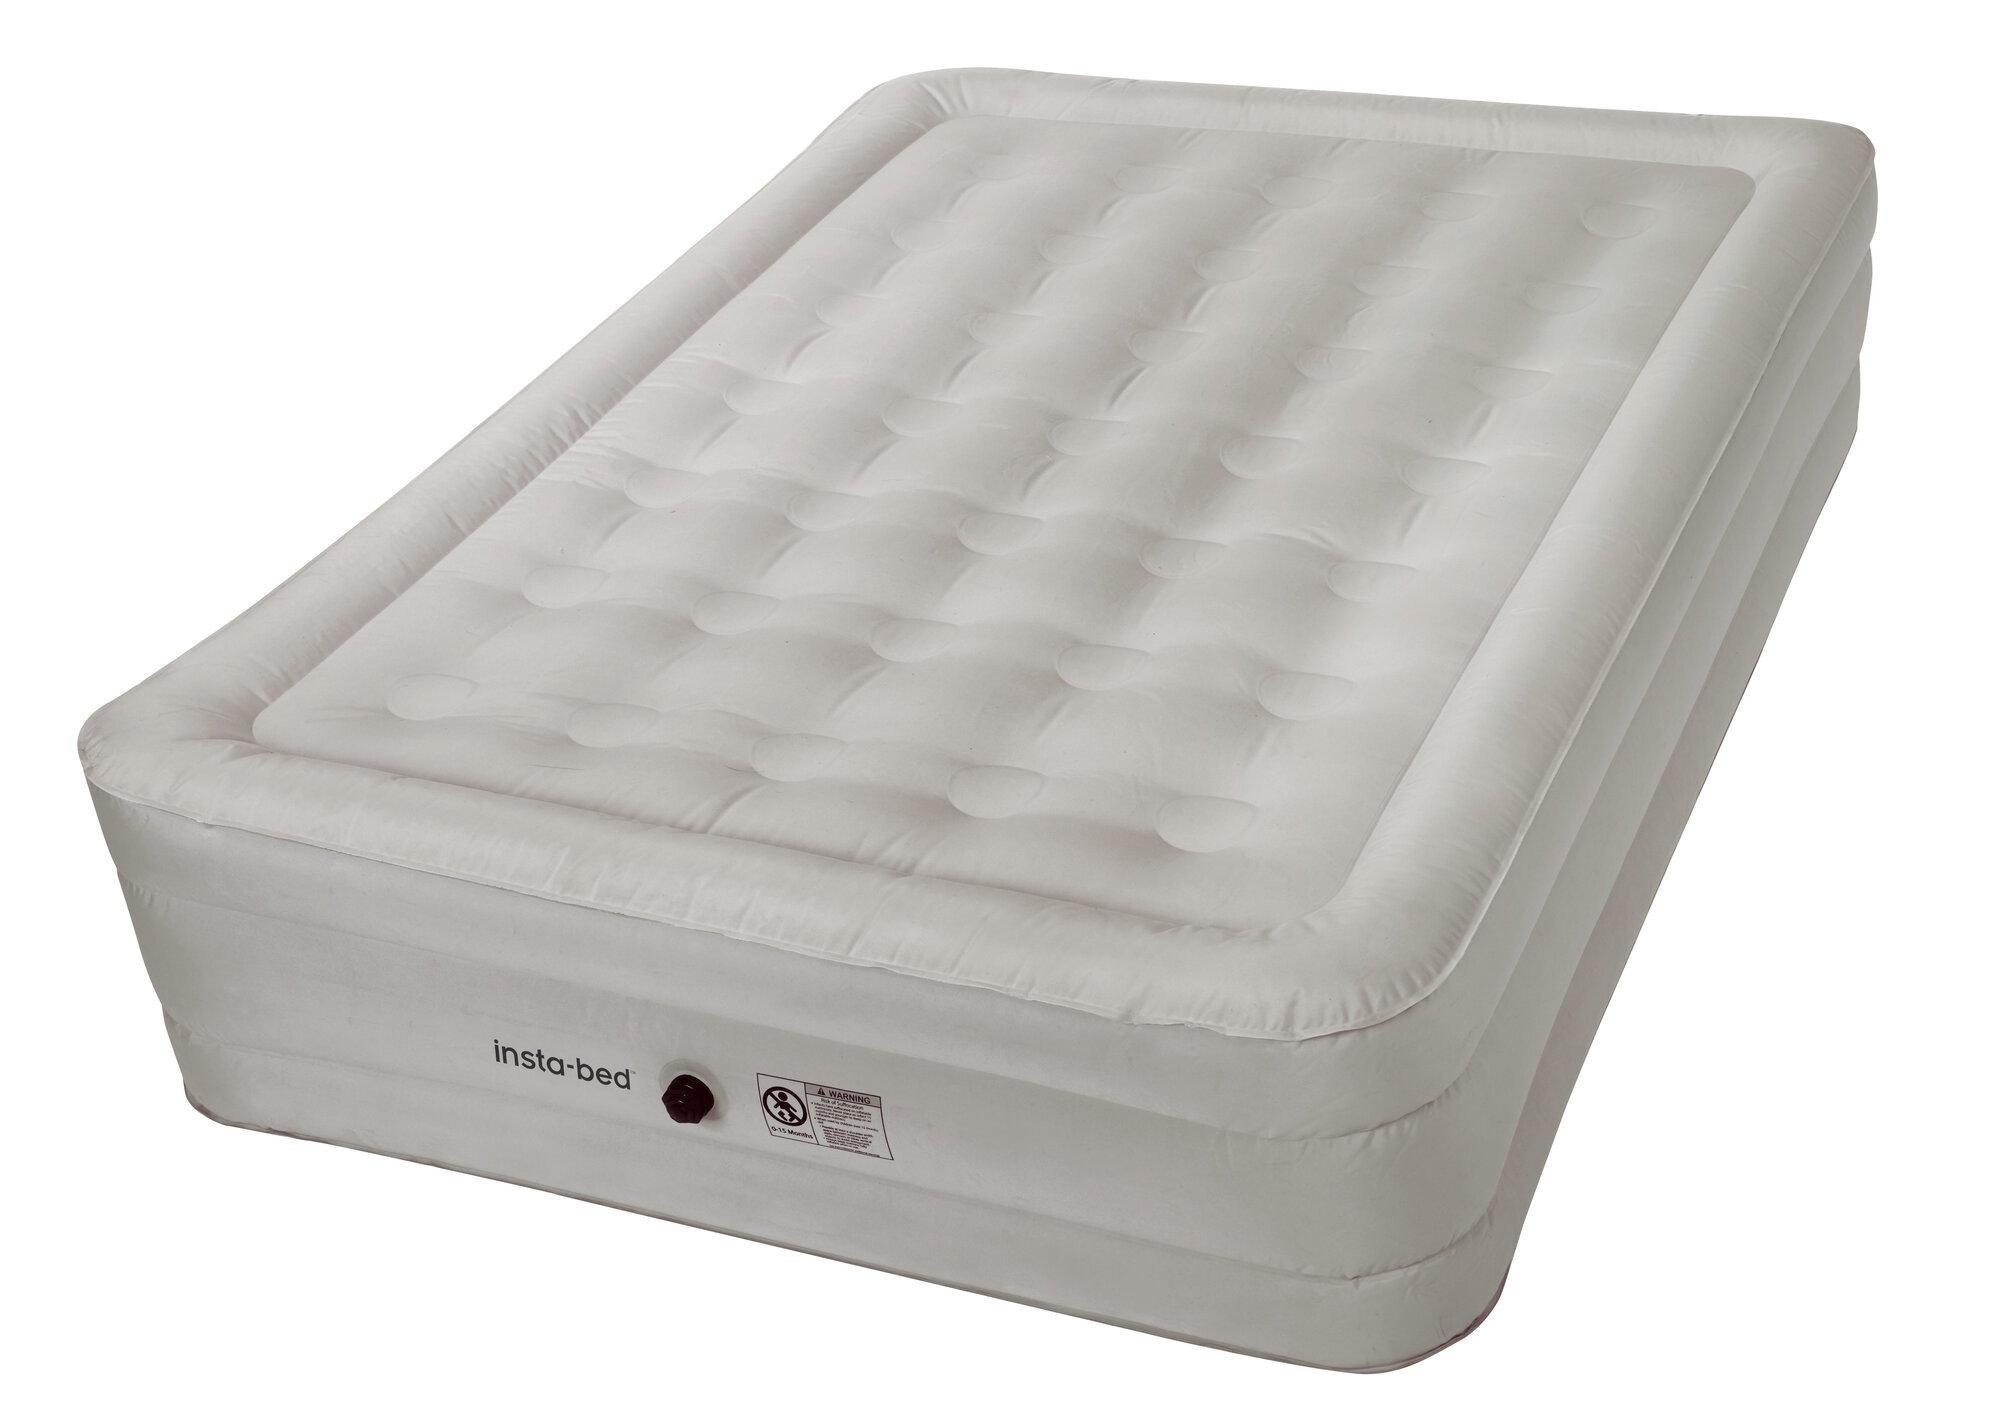 insta bed full size air mattress